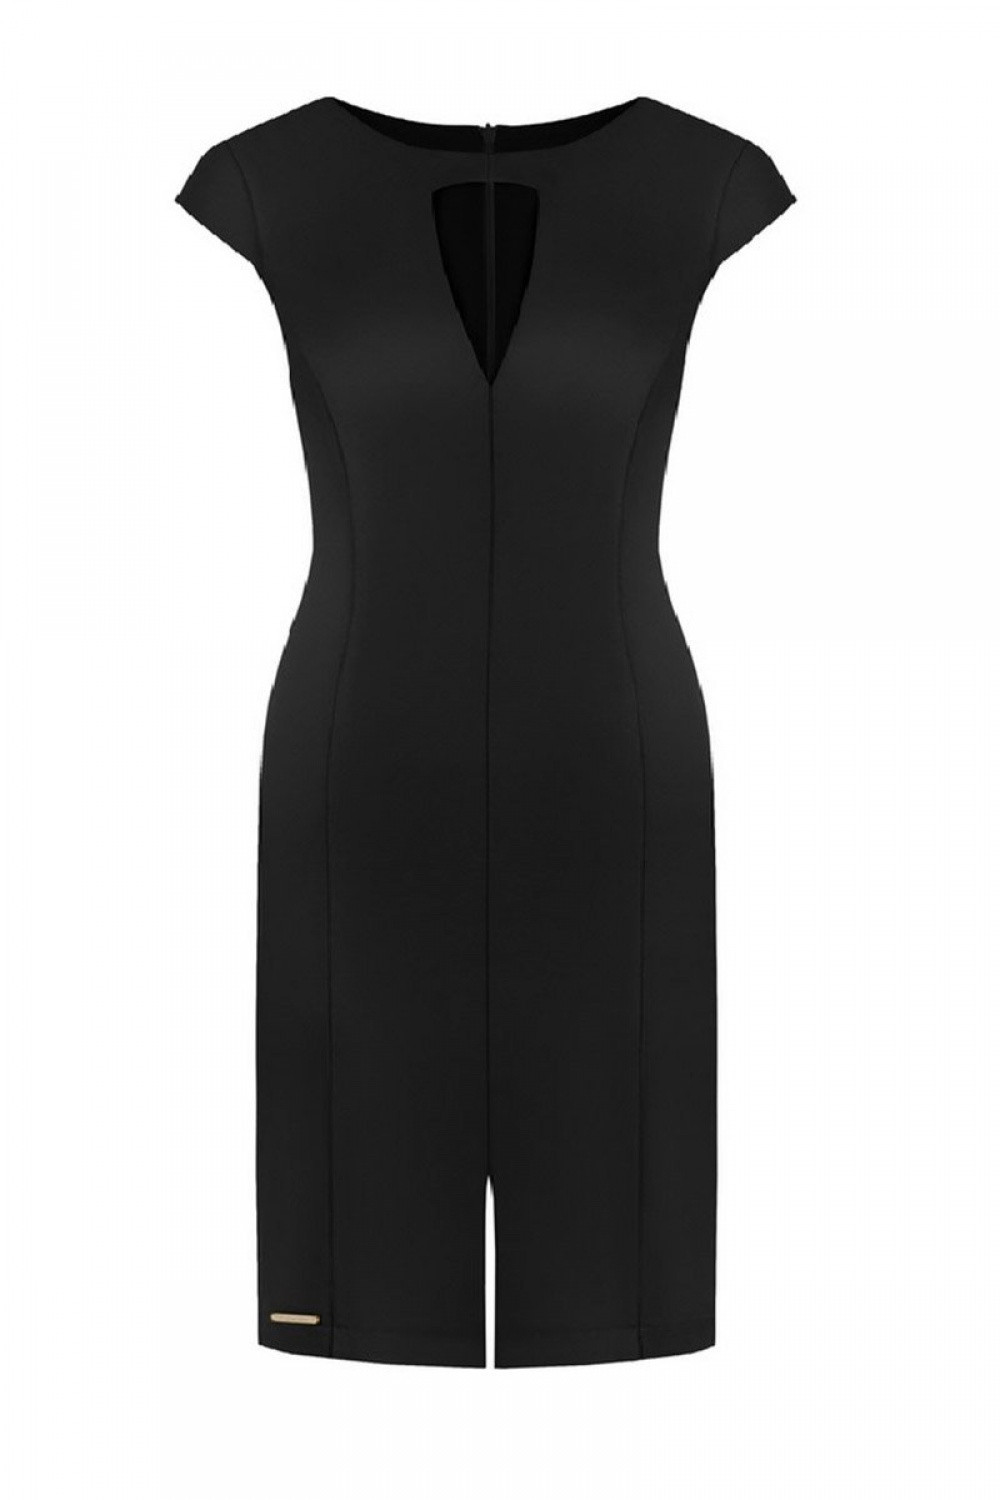 Společenské šaty model 108533 Ellina - Jersa černá 46